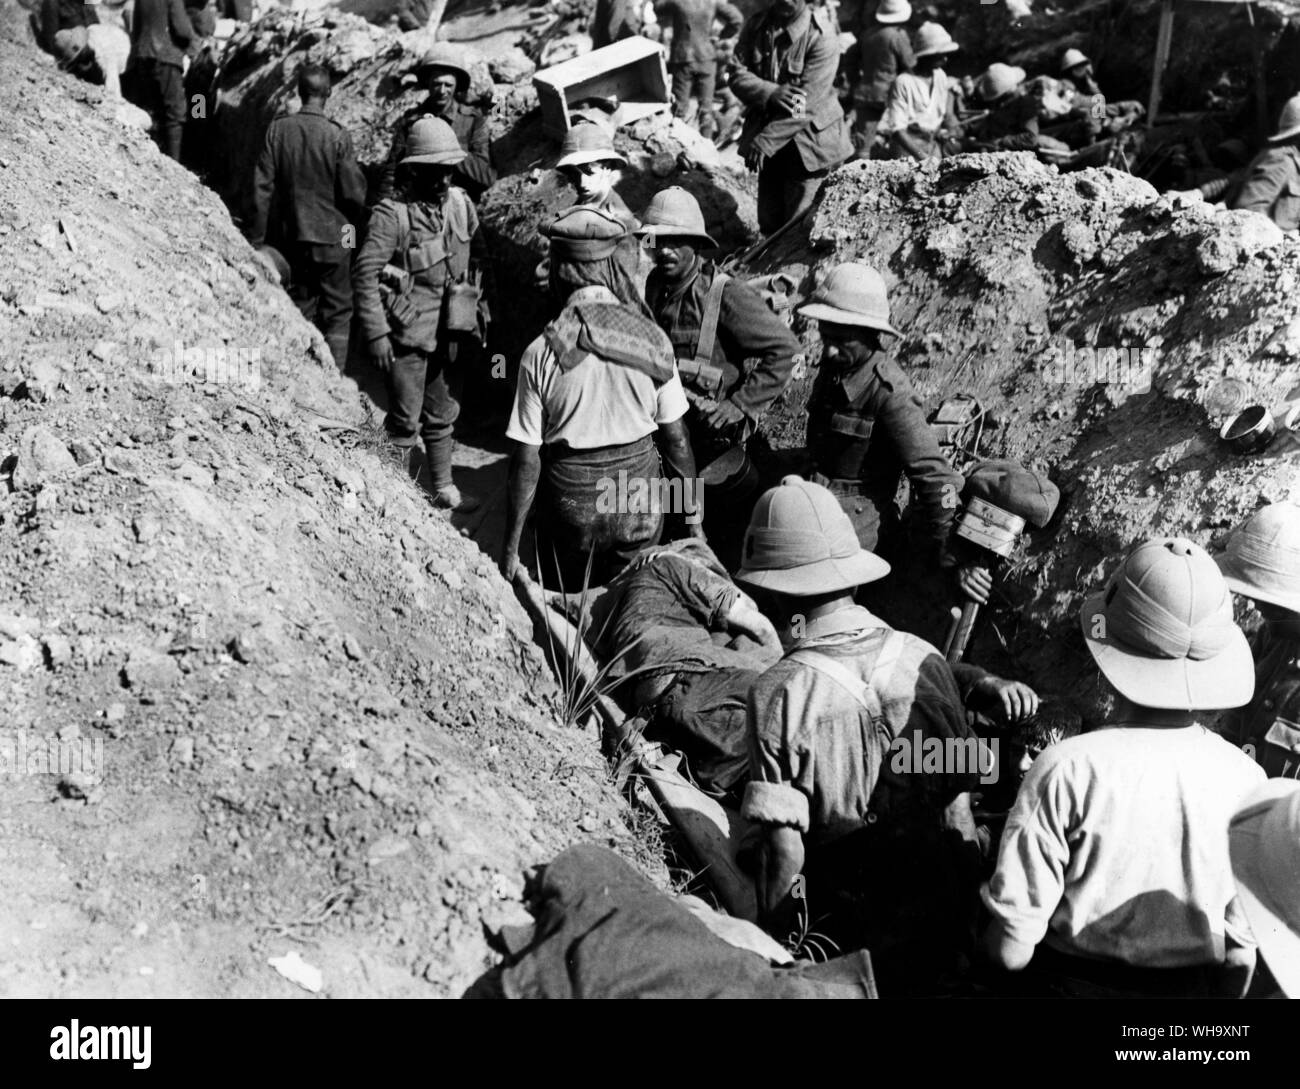 WW1 : la congestion dans une tranchée de communication pendant une action, avec quelques blessés et des brancards en baisse. Banque D'Images